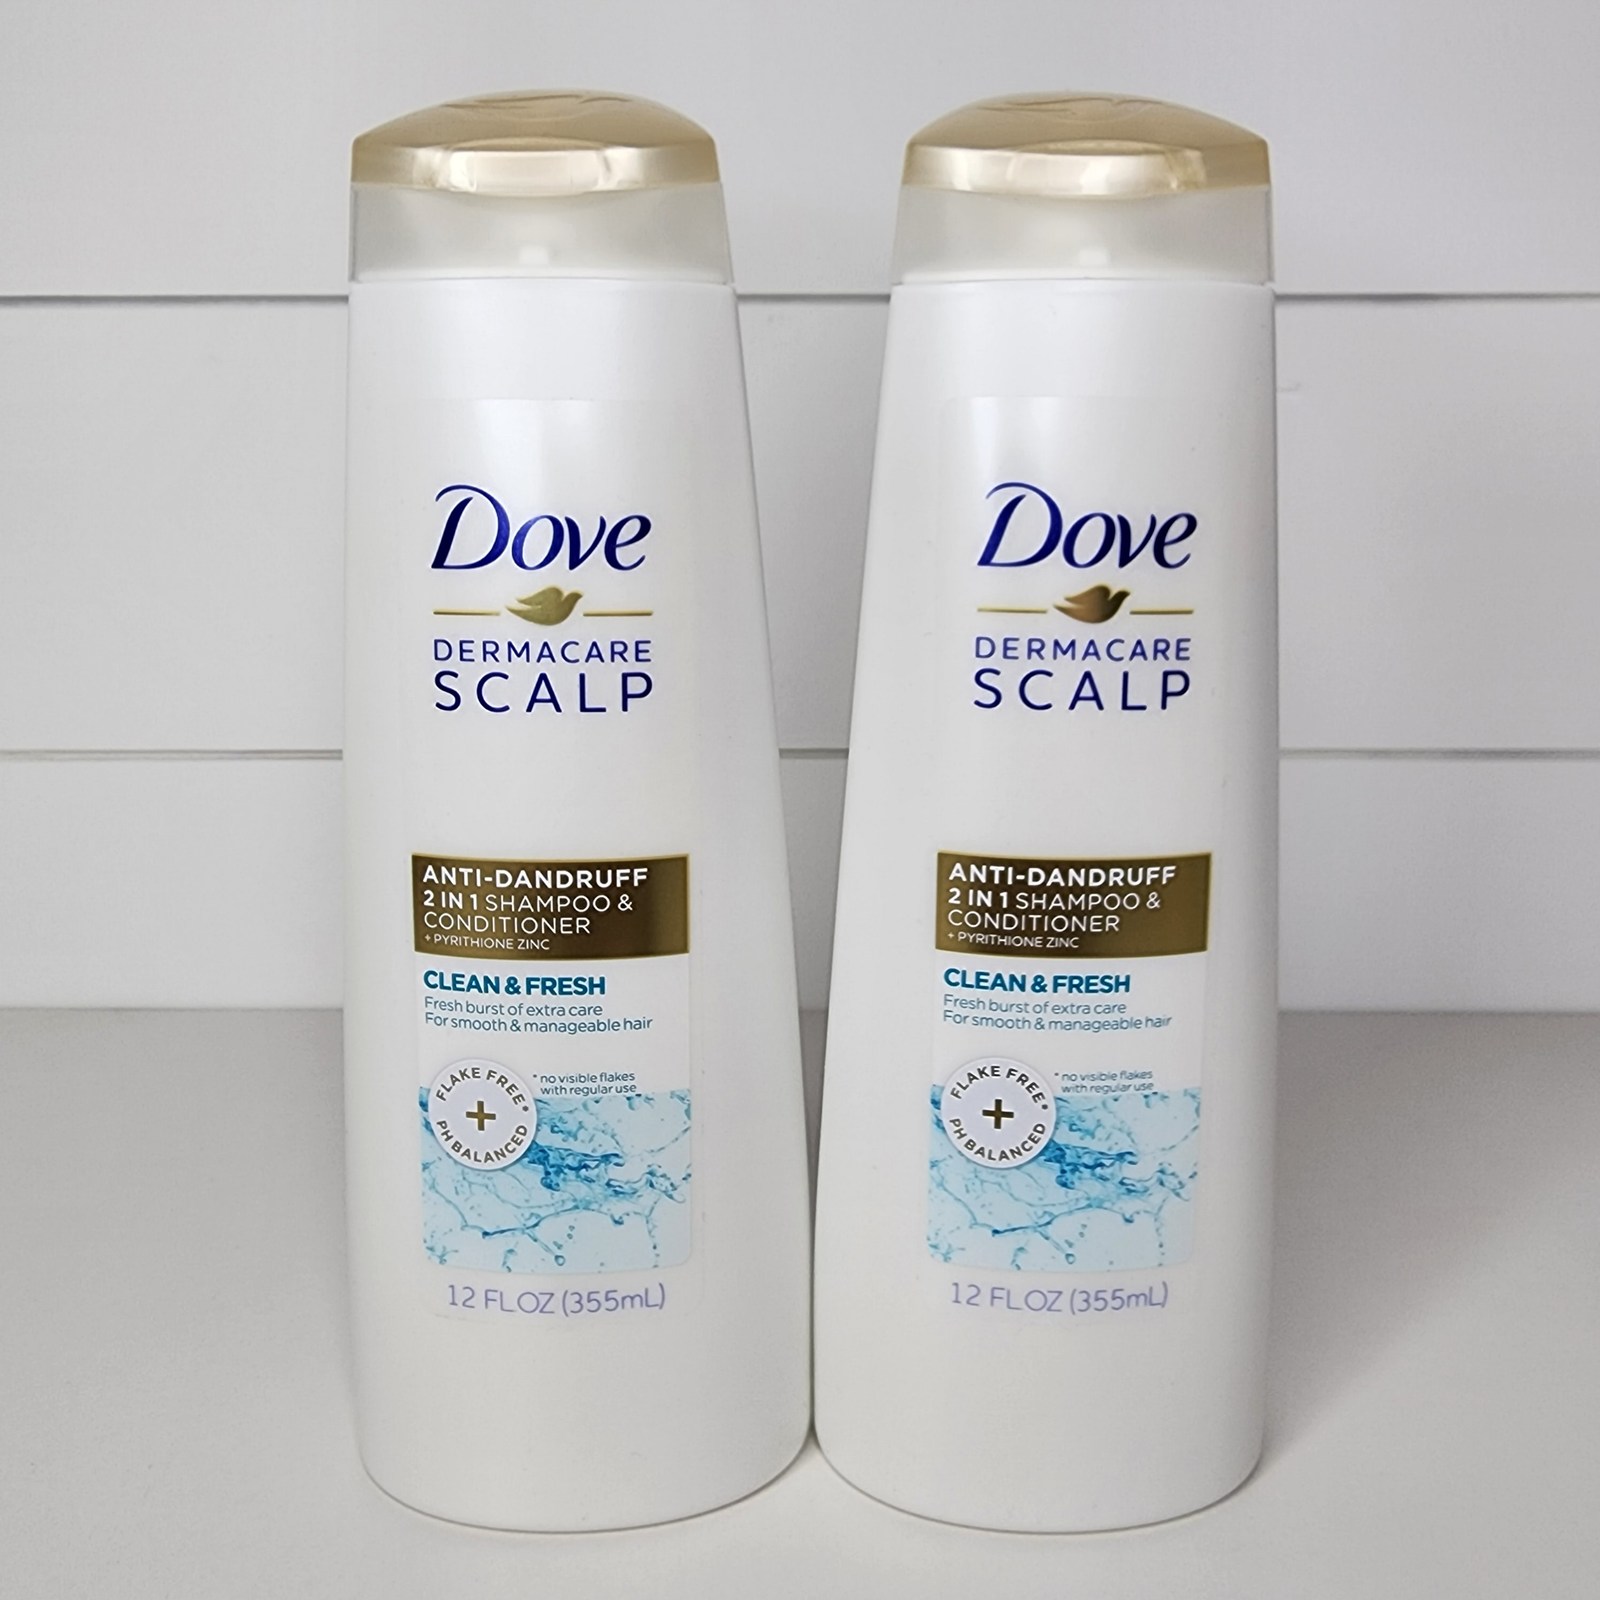 2-Dove Dermacare Scalp Anti-Dandruff 2in1 Shampoo Conditioner Clean & Fresh 12oz - $24.99